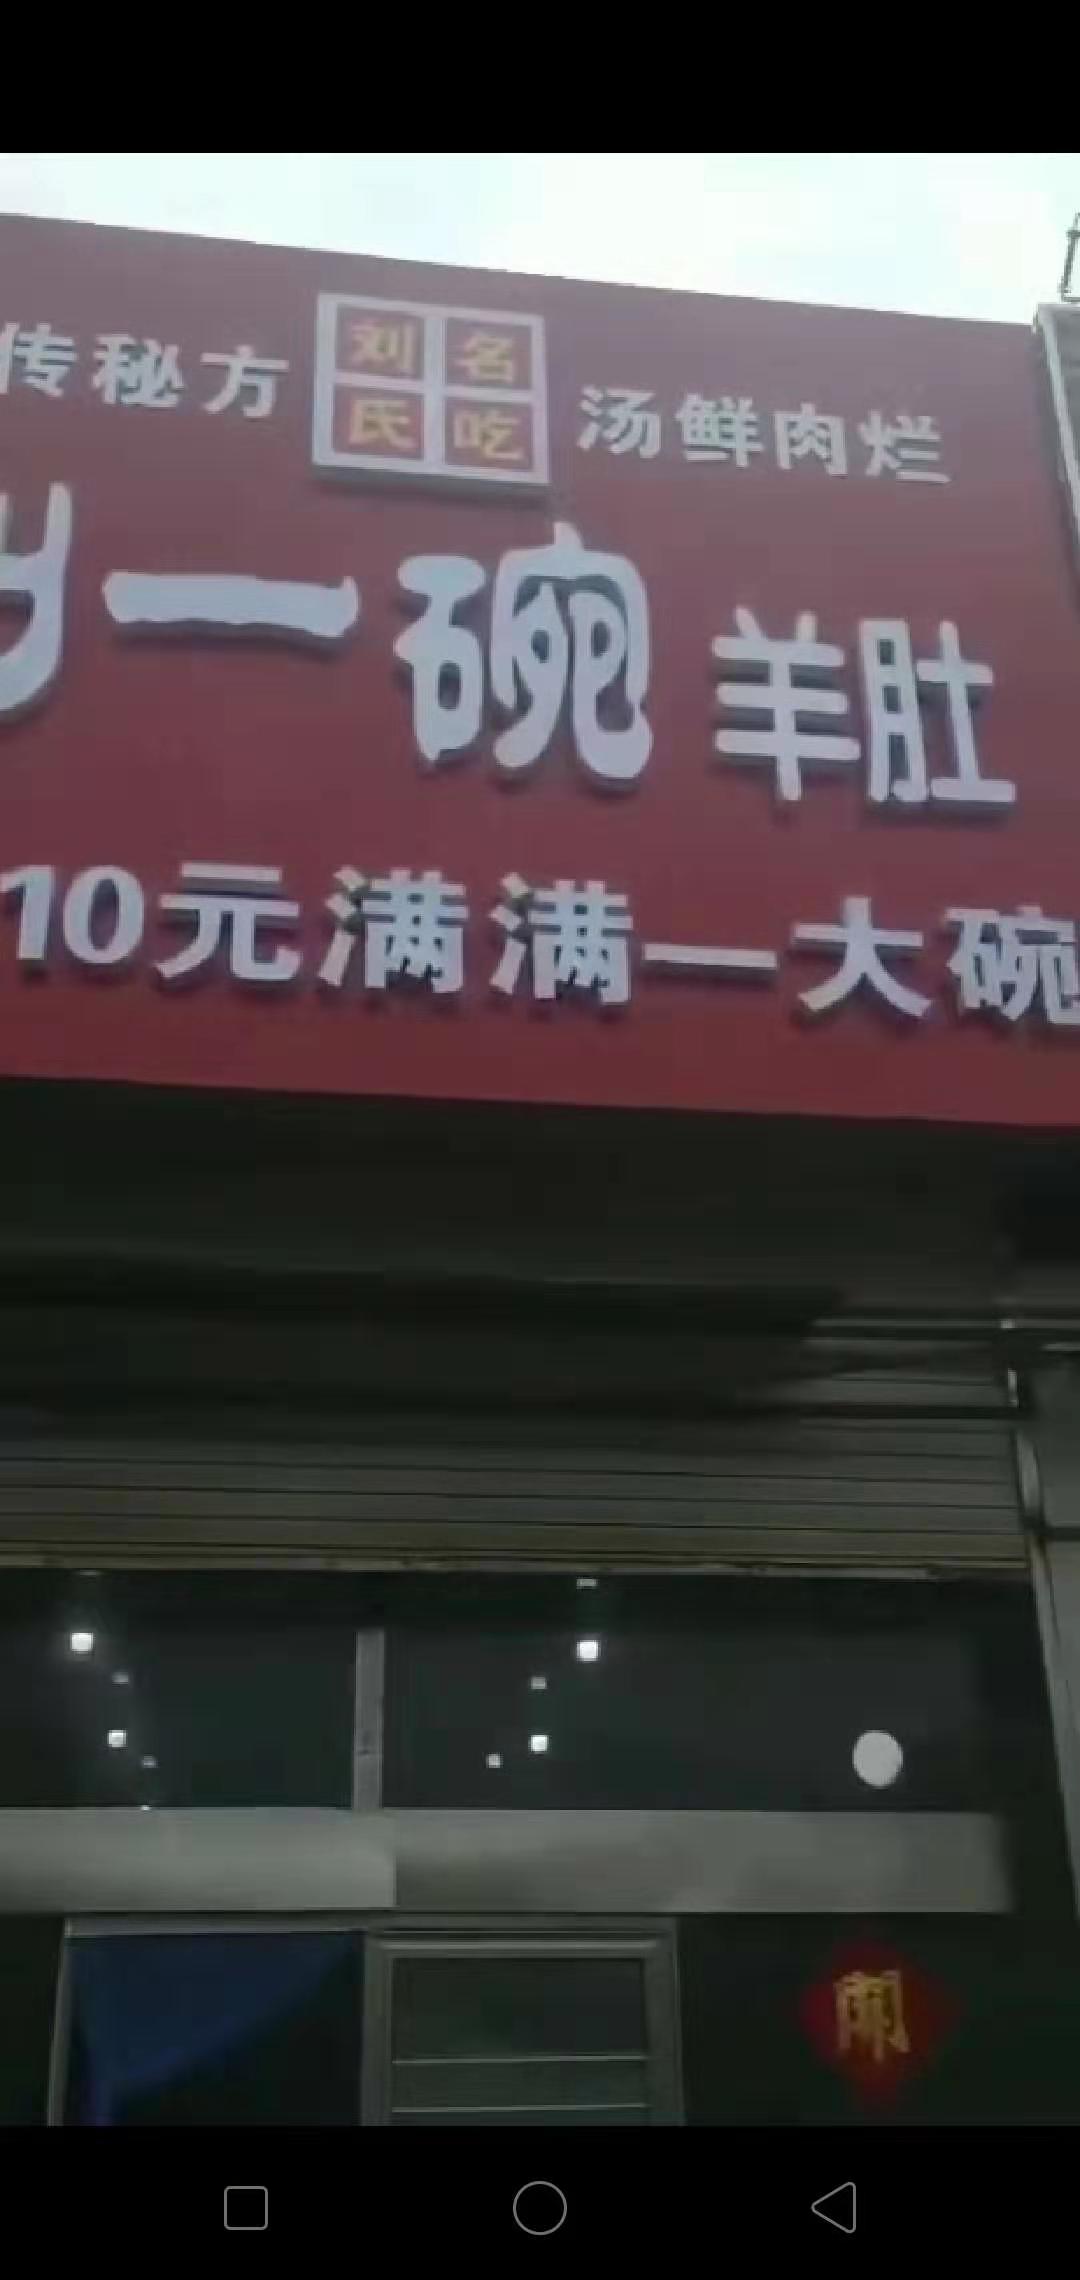 山东刘一碗莱芜钢城店2019年10月12日盛大开业，祝开业大吉